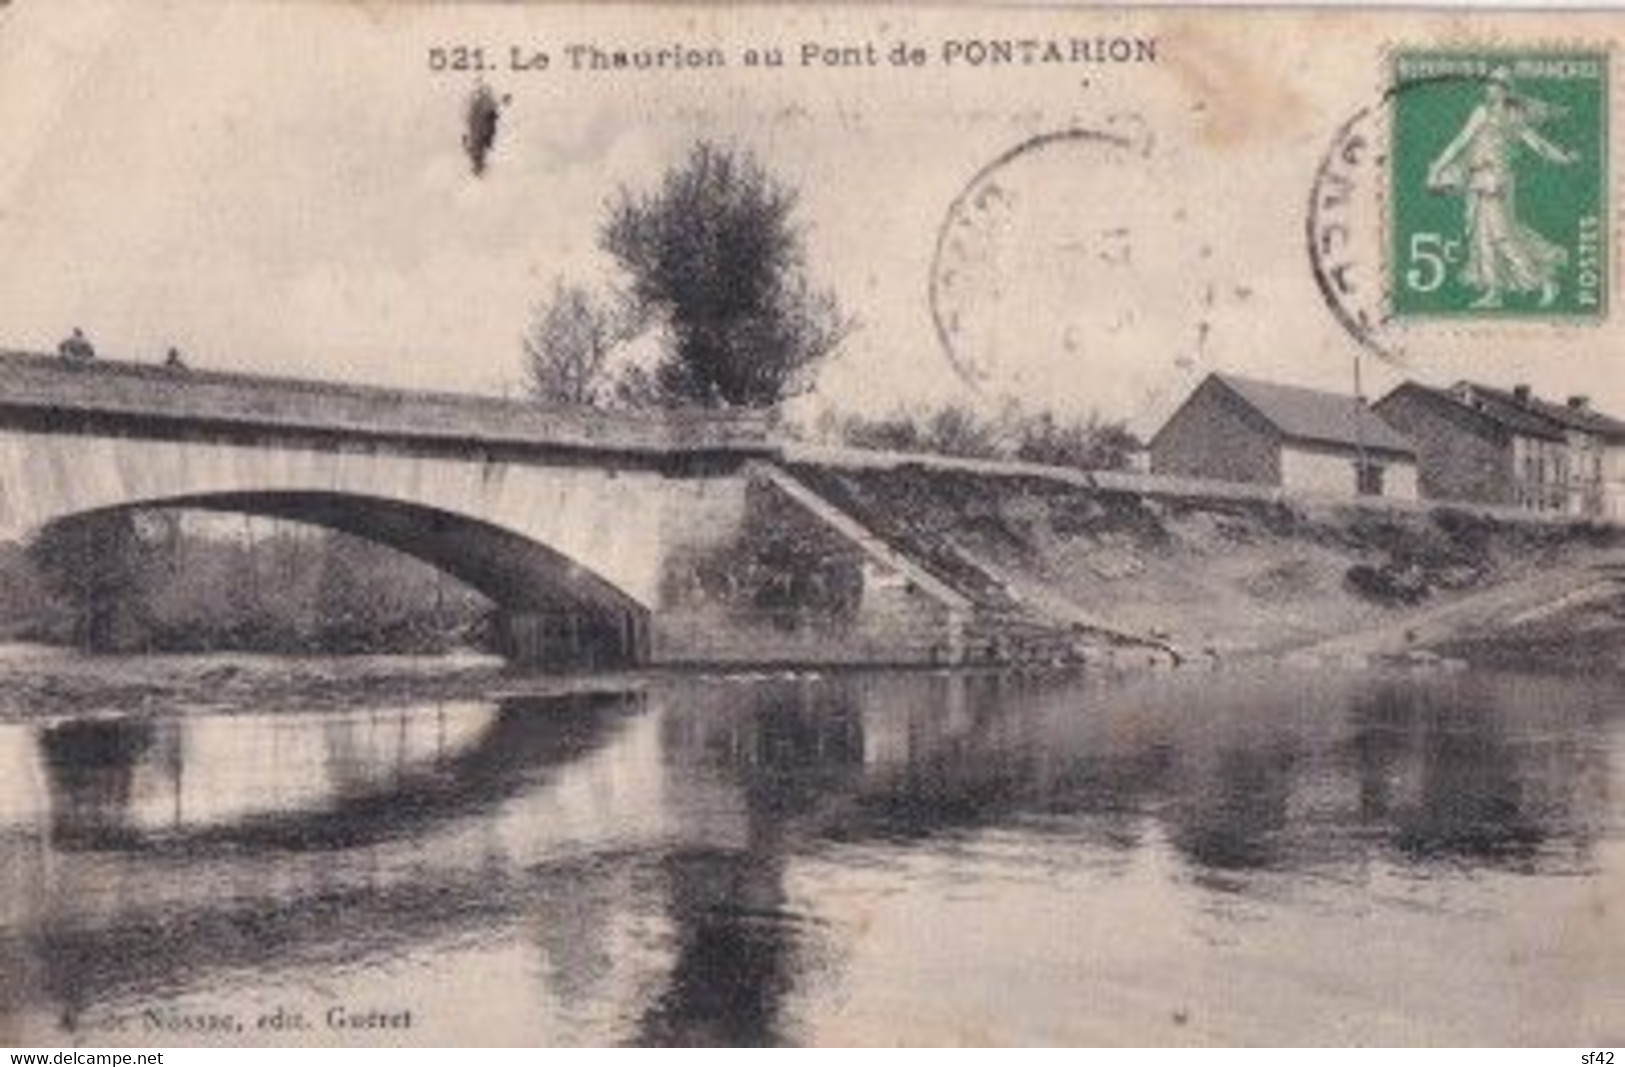 LE THAURION AU PONT DE PONTARION - Pontarion